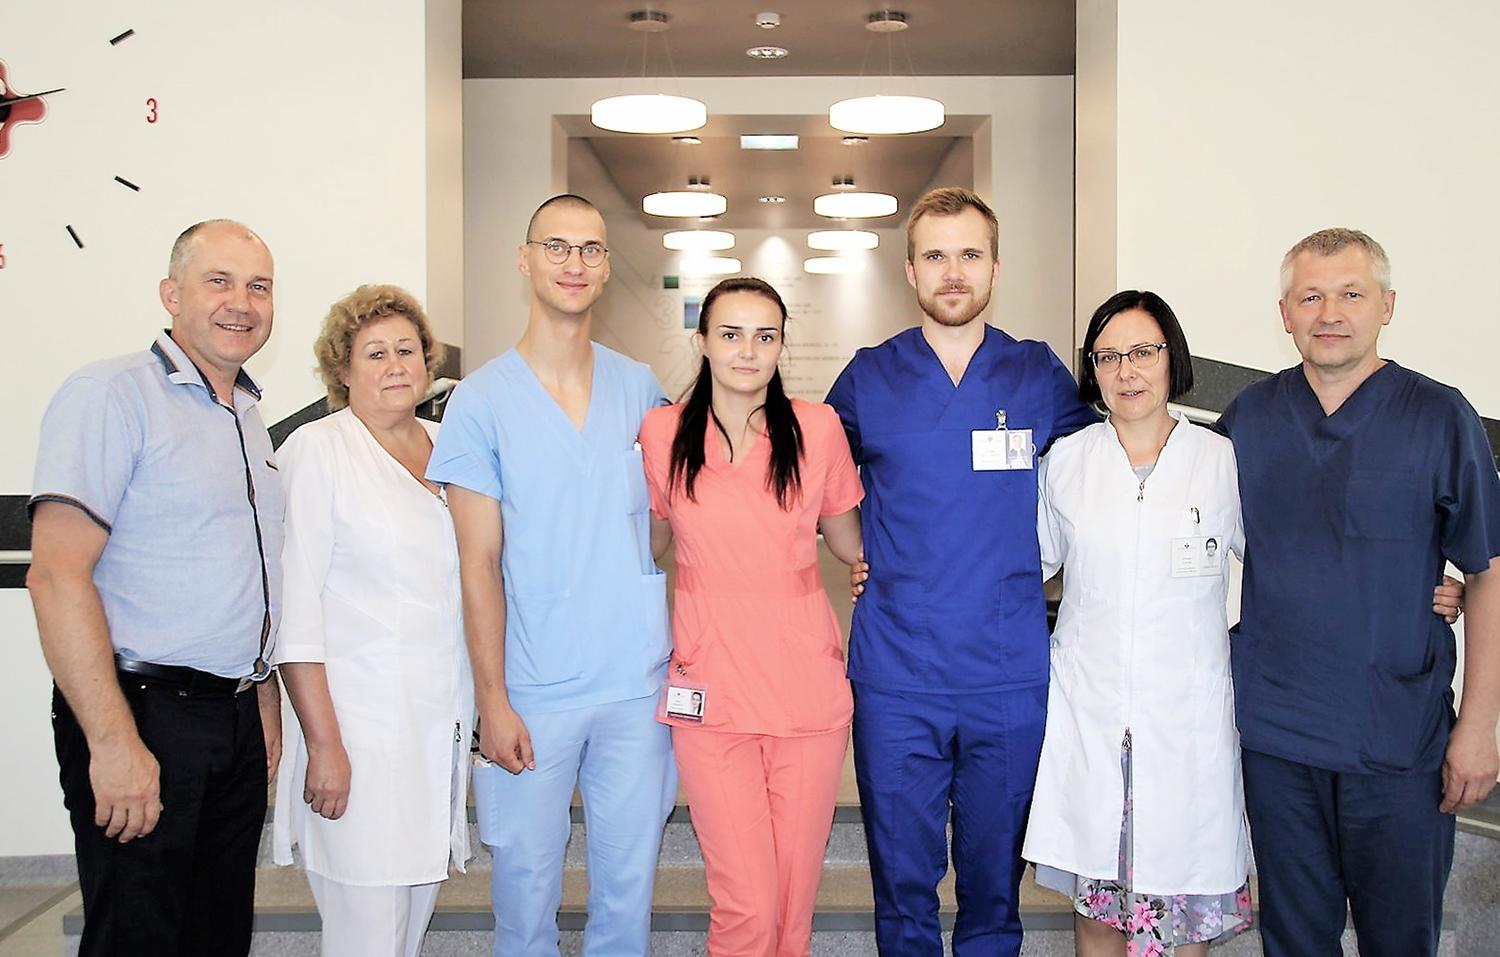 Pasveikino ligoninės vadovą ir naujus darbuotojus / Rajono meras lankėsi Ukmergės ligoninėje ir susitiko su jos vadovais bei naujais darbuotojais. Autorės nuotr.